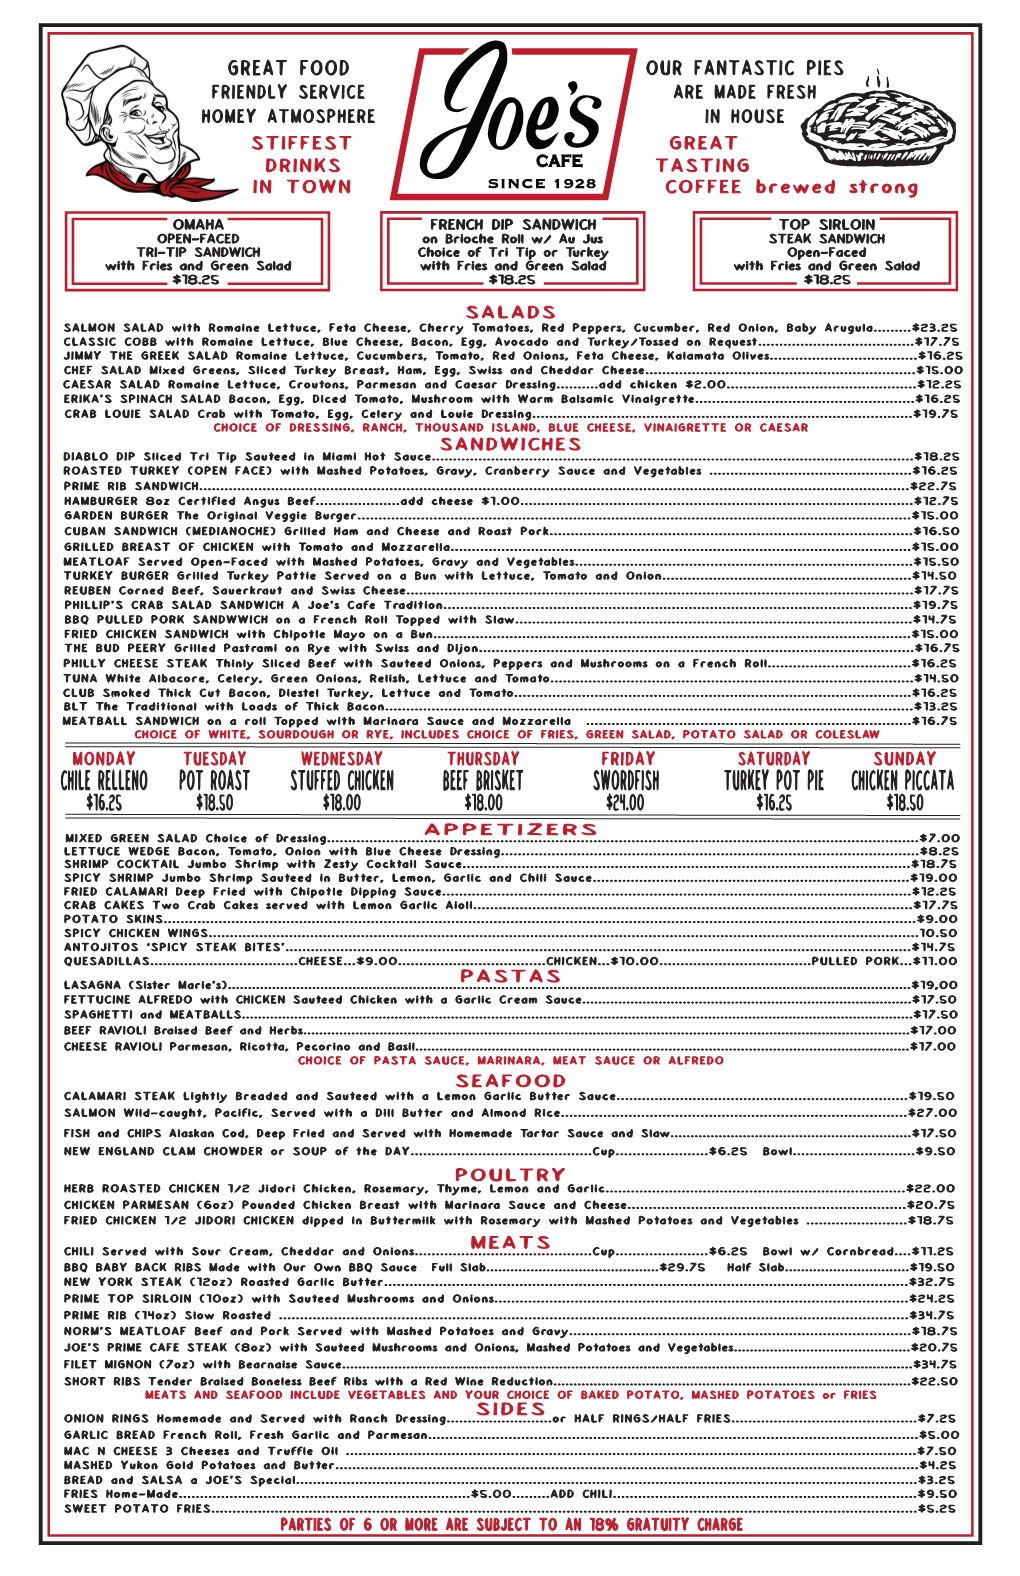 Chile Relleno Pot Roast Stuffed Chicken Beef Brisket Swordfish Turkey Pot Pie Chicken Piccata $16.25 $18.50 $18.00 $18.00 $24.00 $16.25 $18.50